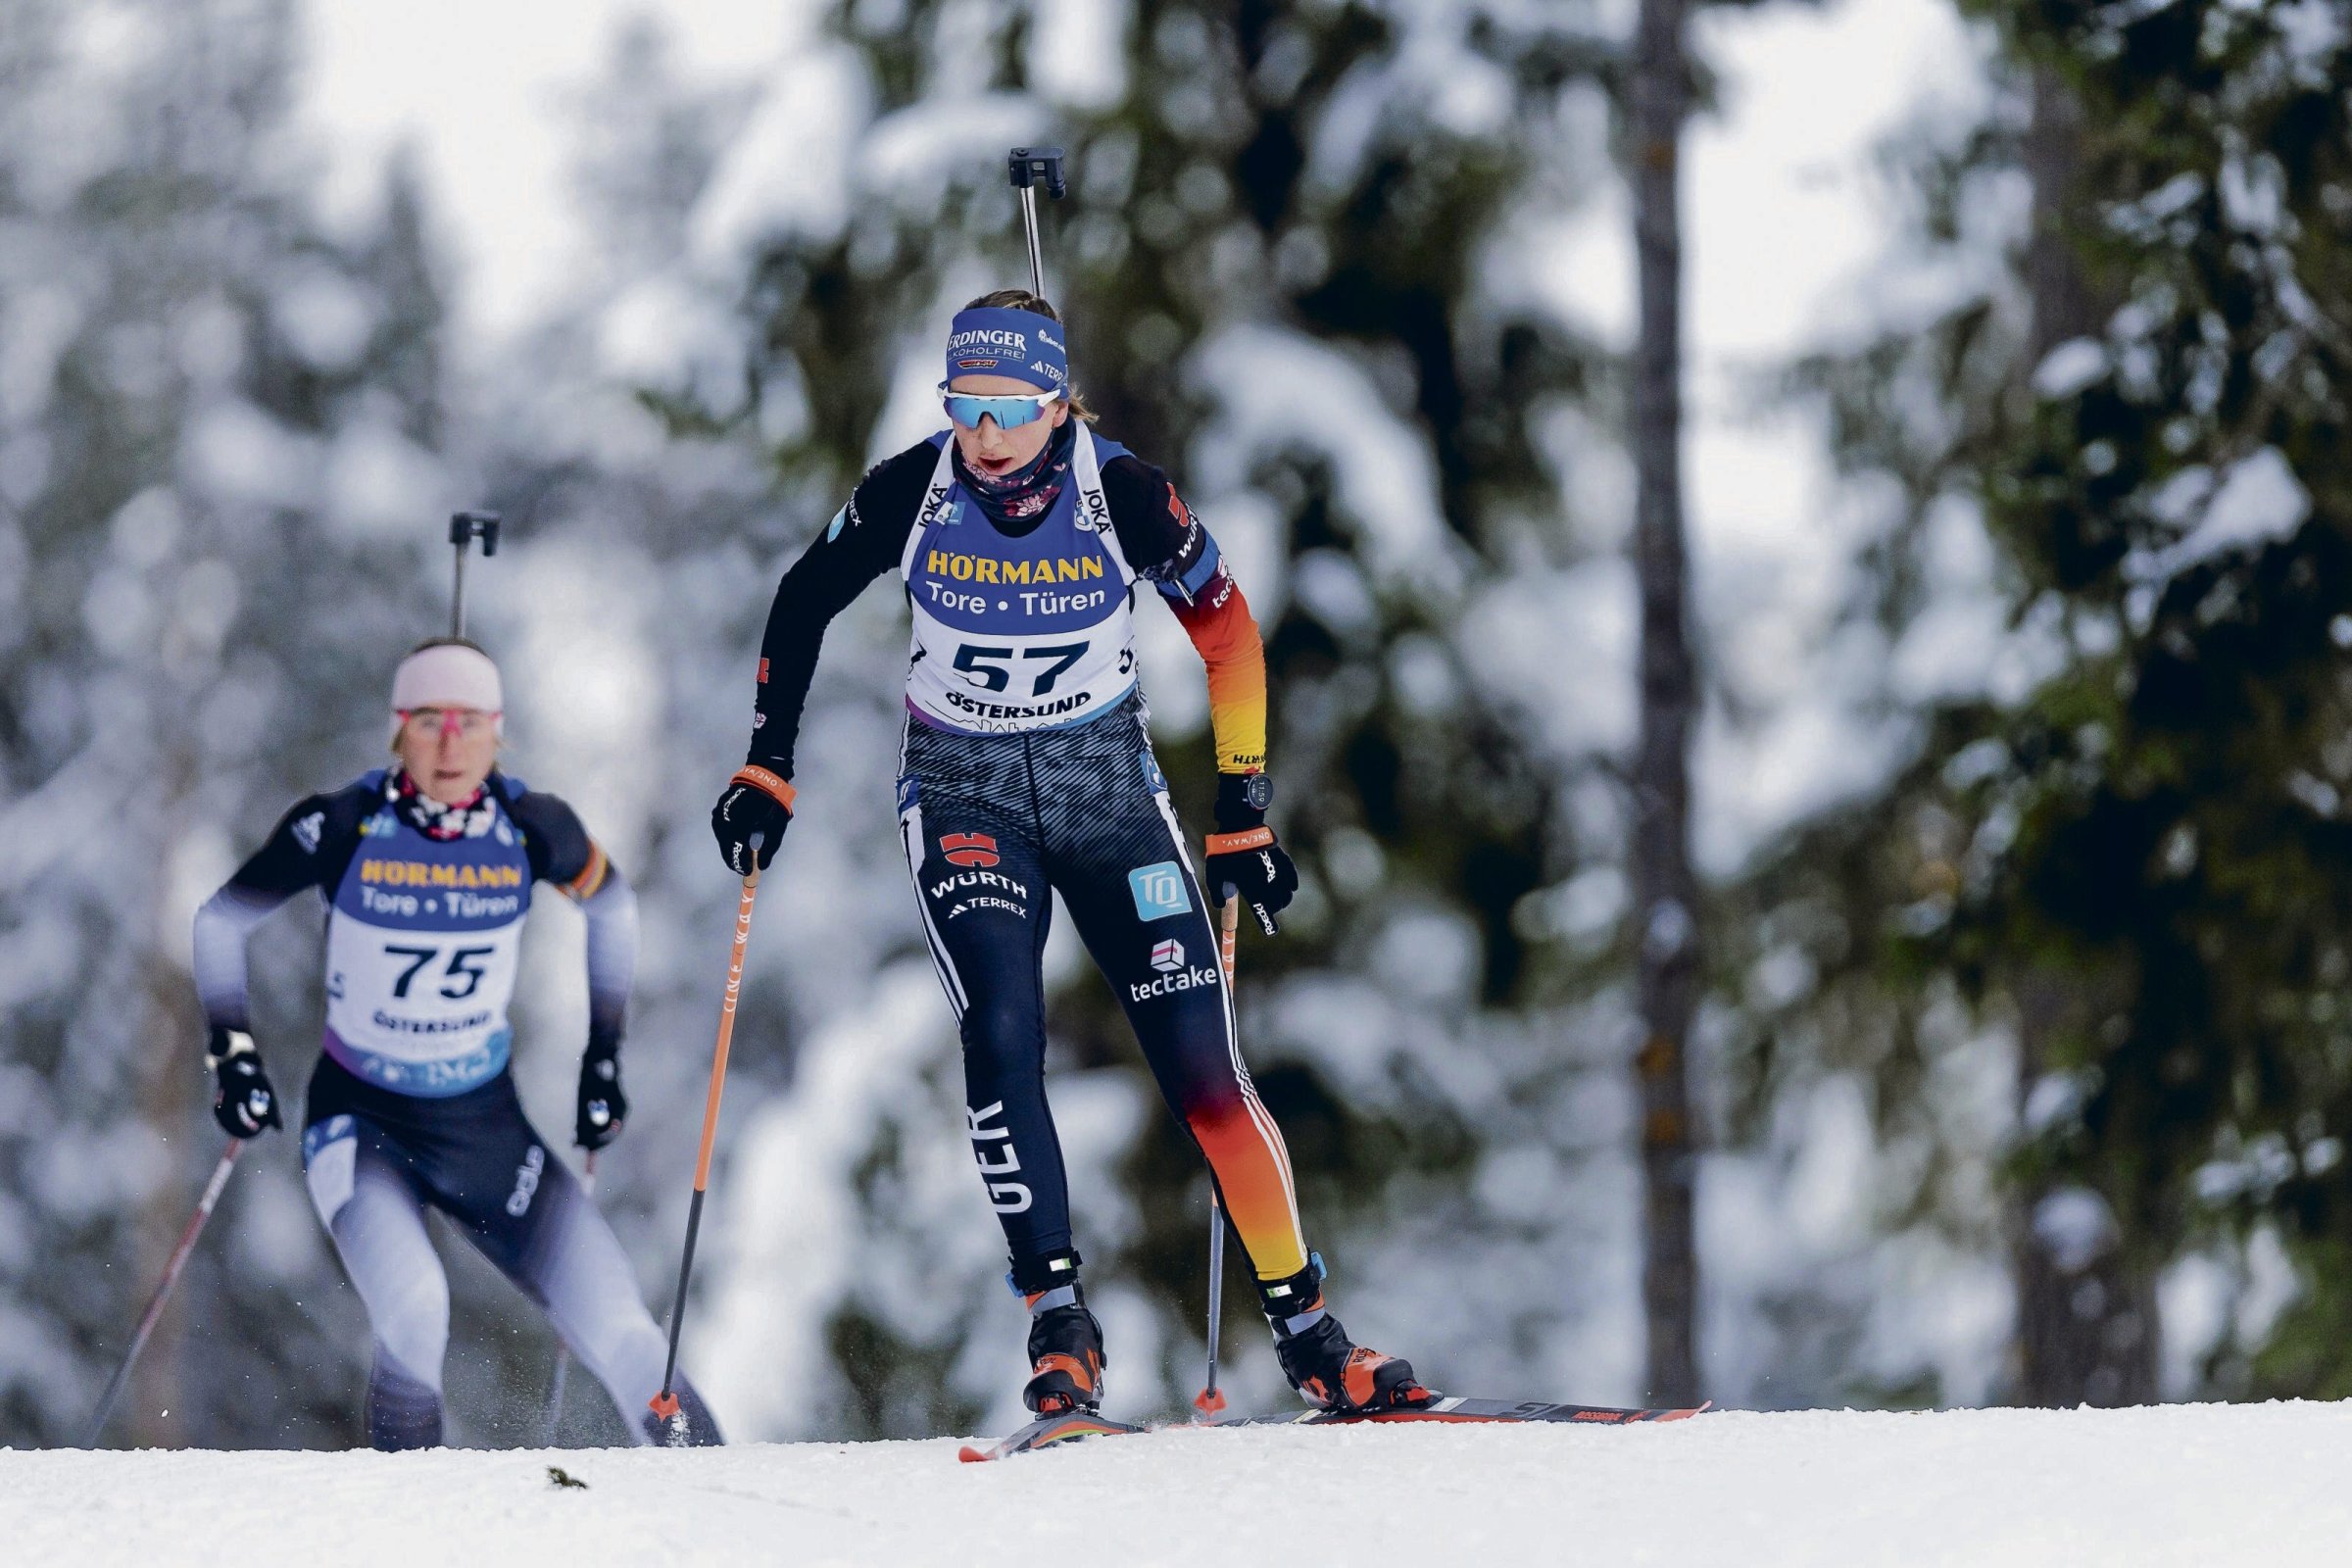 Biathlon : les biathlètes veulent améliorer leur bon départ en Coupe du monde au relais